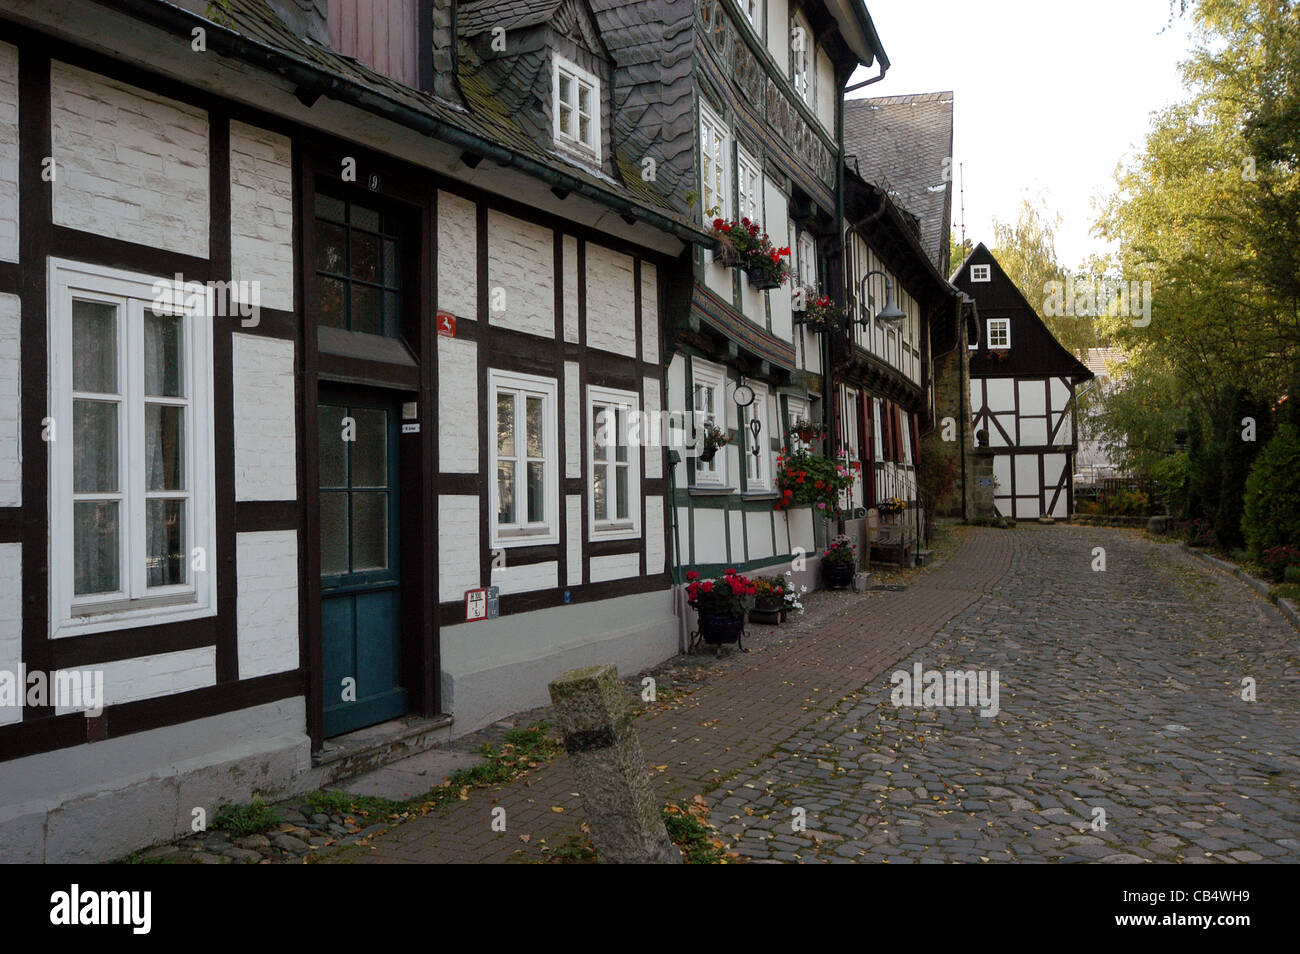 Strade acciottolate e metà case con travi di legno nella città medievale di Goslar, Repubblica federale di Germania. Foto Stock